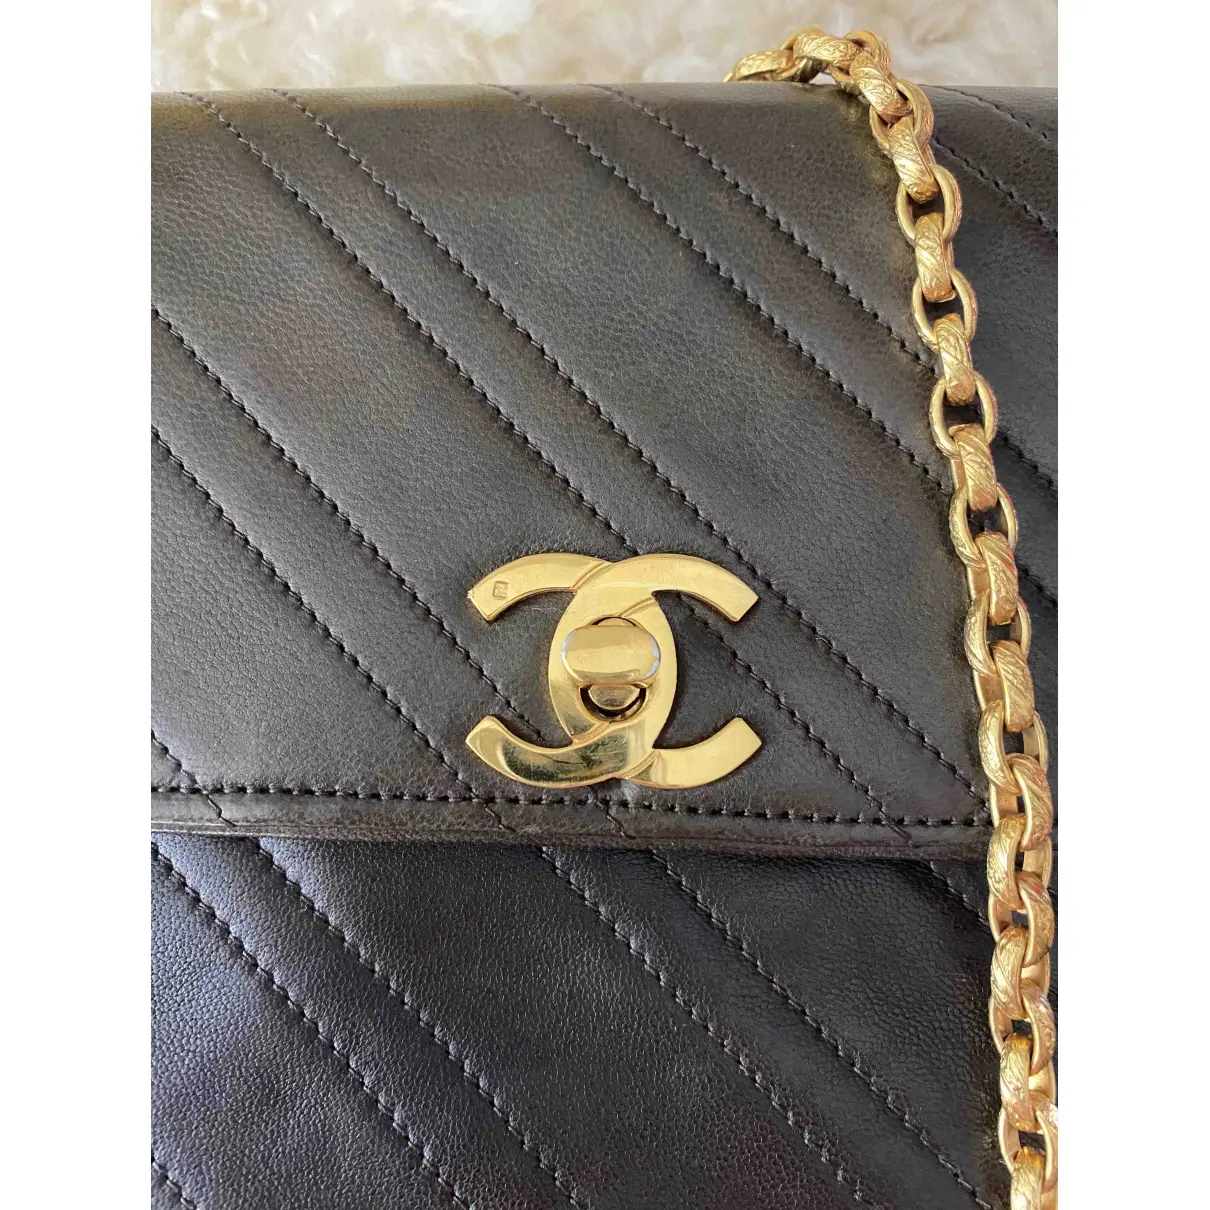 Buy Chanel Leather handbag online - Vintage